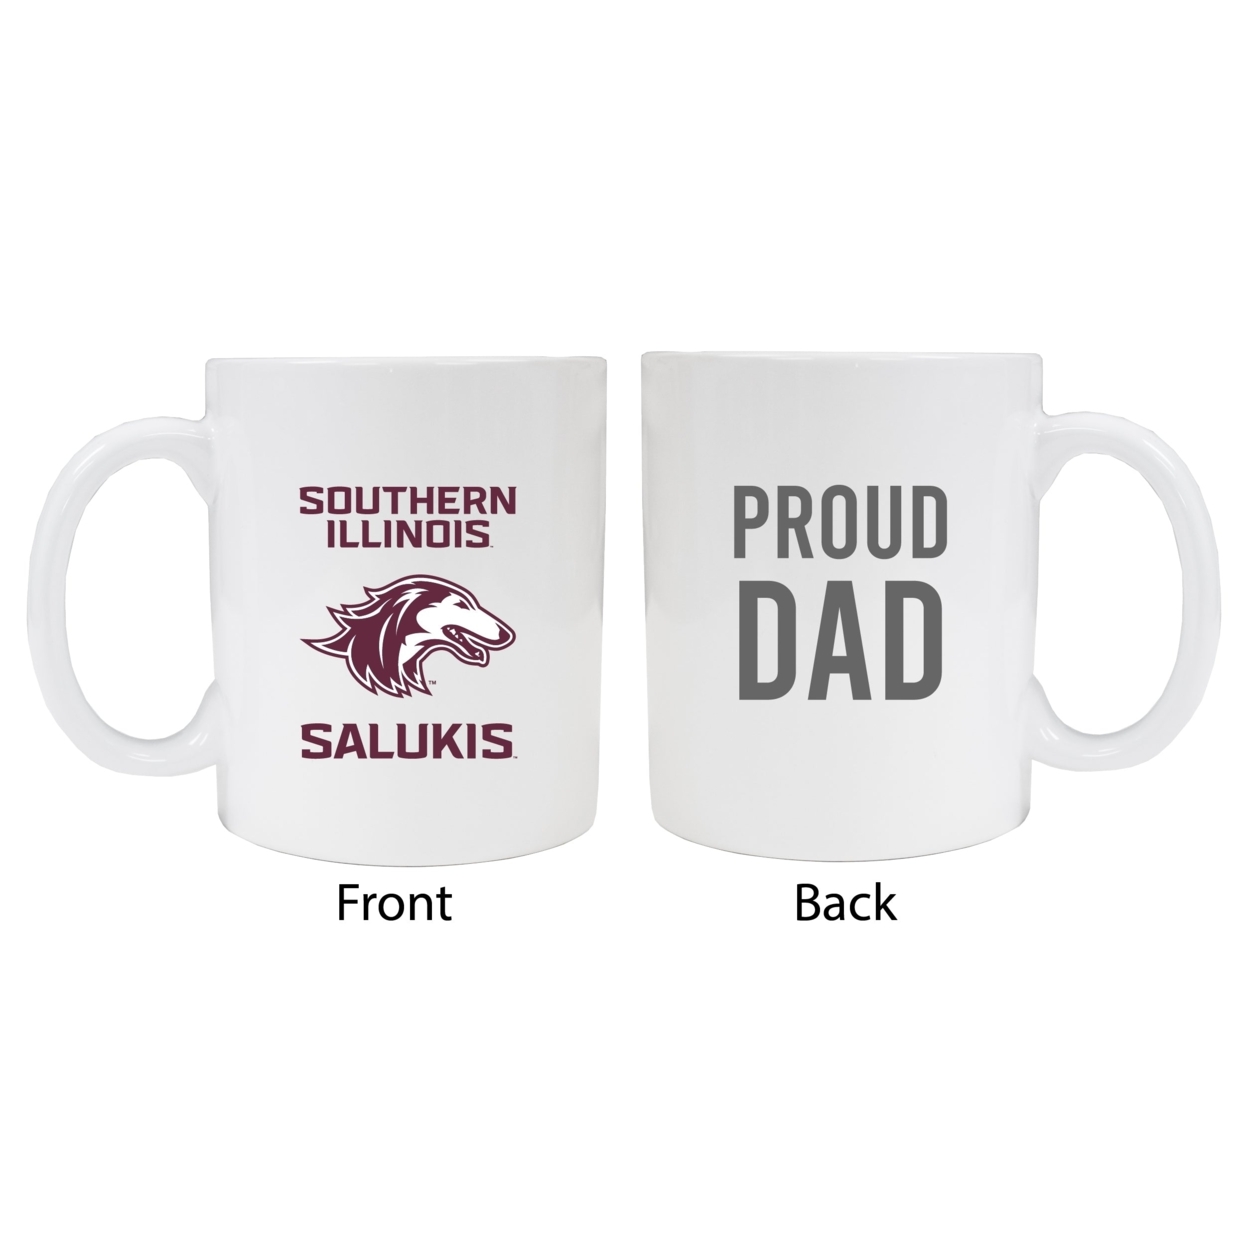 Southern Illinois Salukis Proud Dad Ceramic Coffee Mug - White